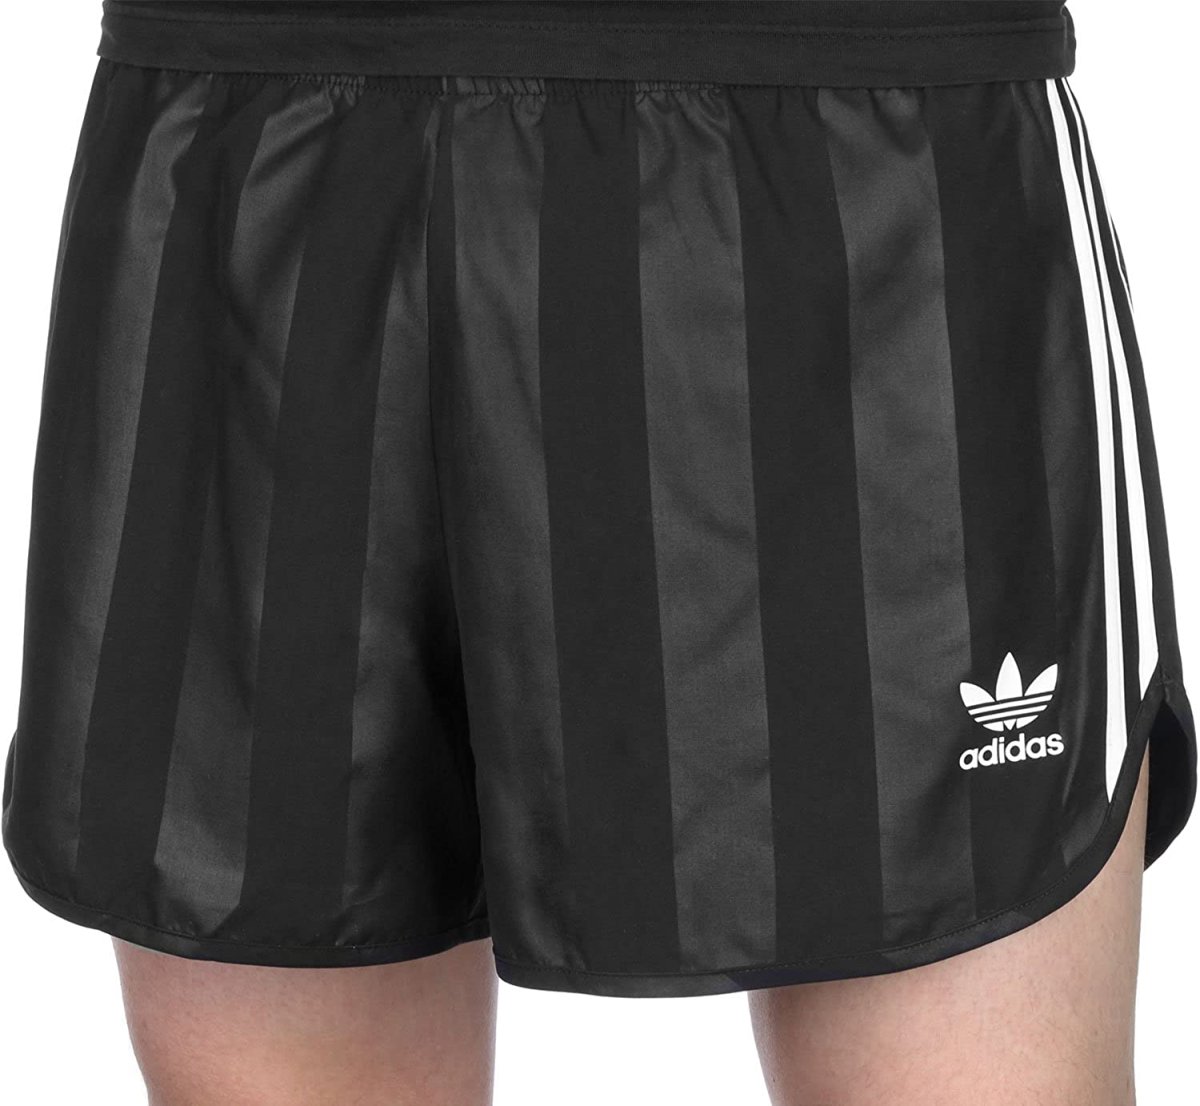 Adidas 3-Stripes шорты женские